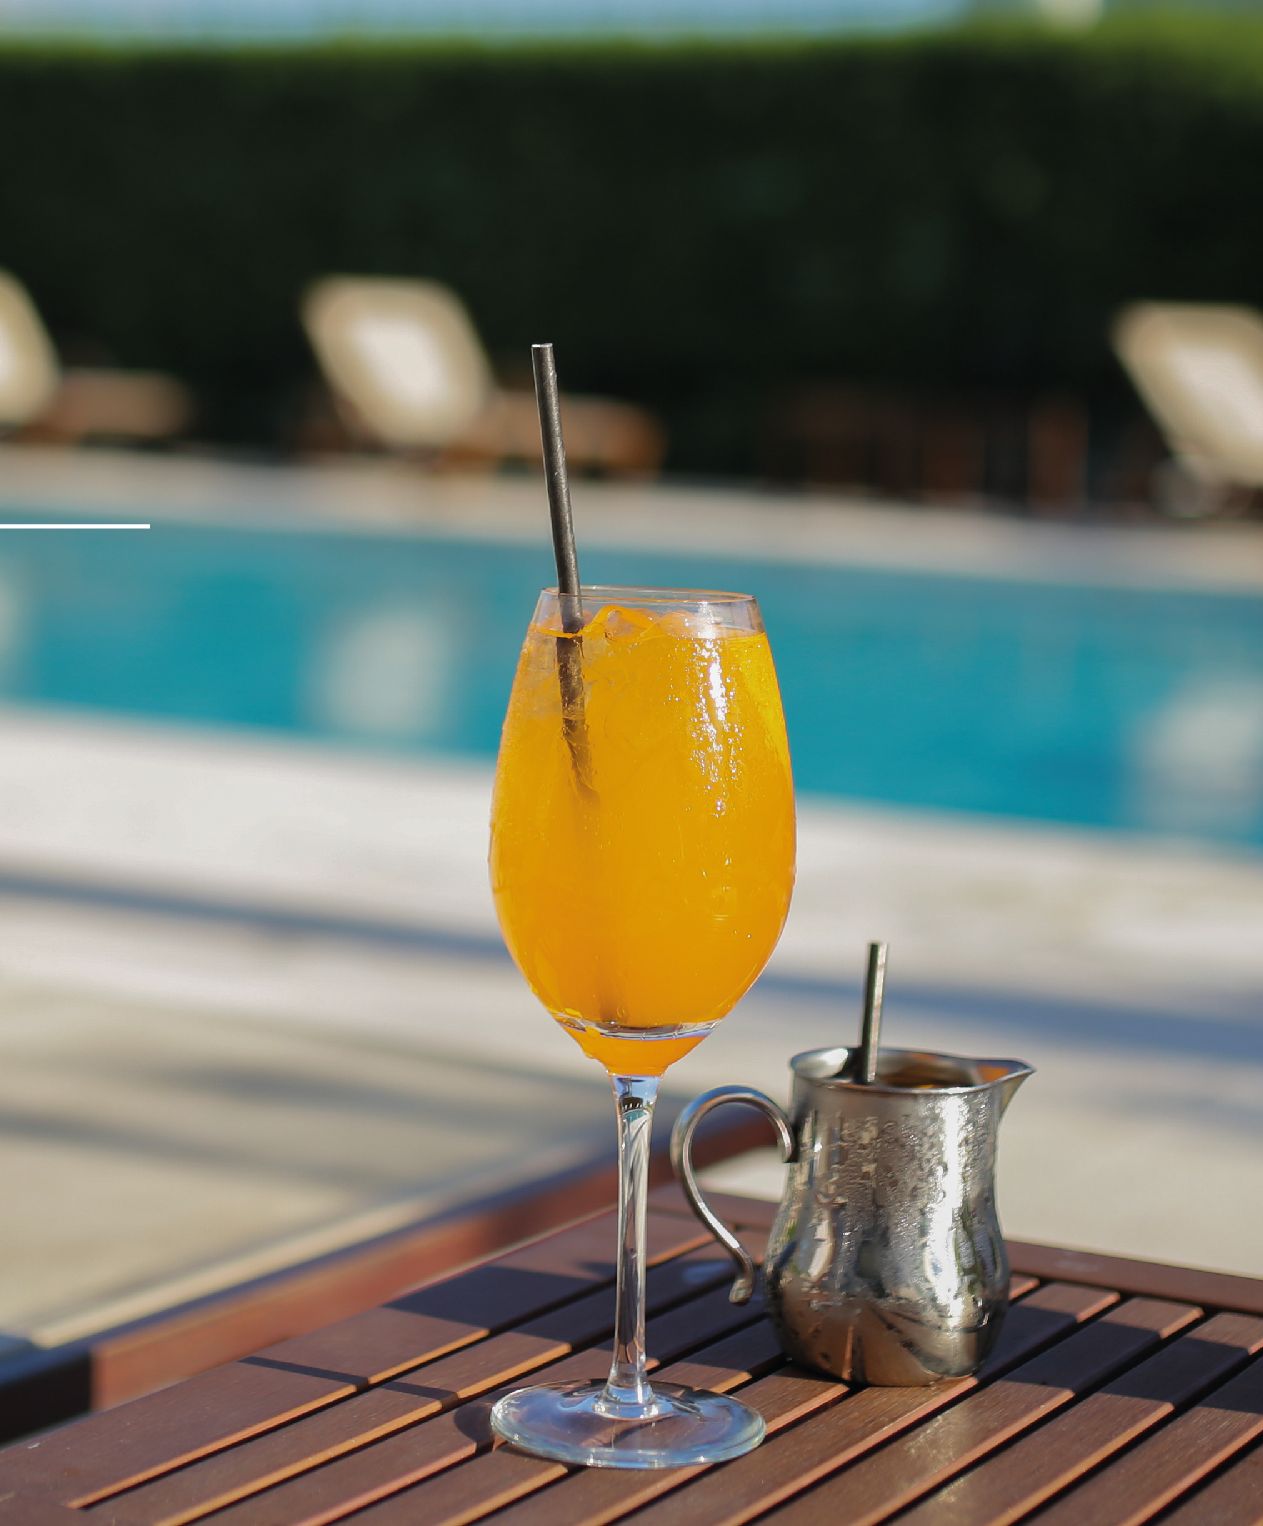 Un vaso de jugo de naranja con una pajita sobre una mesa